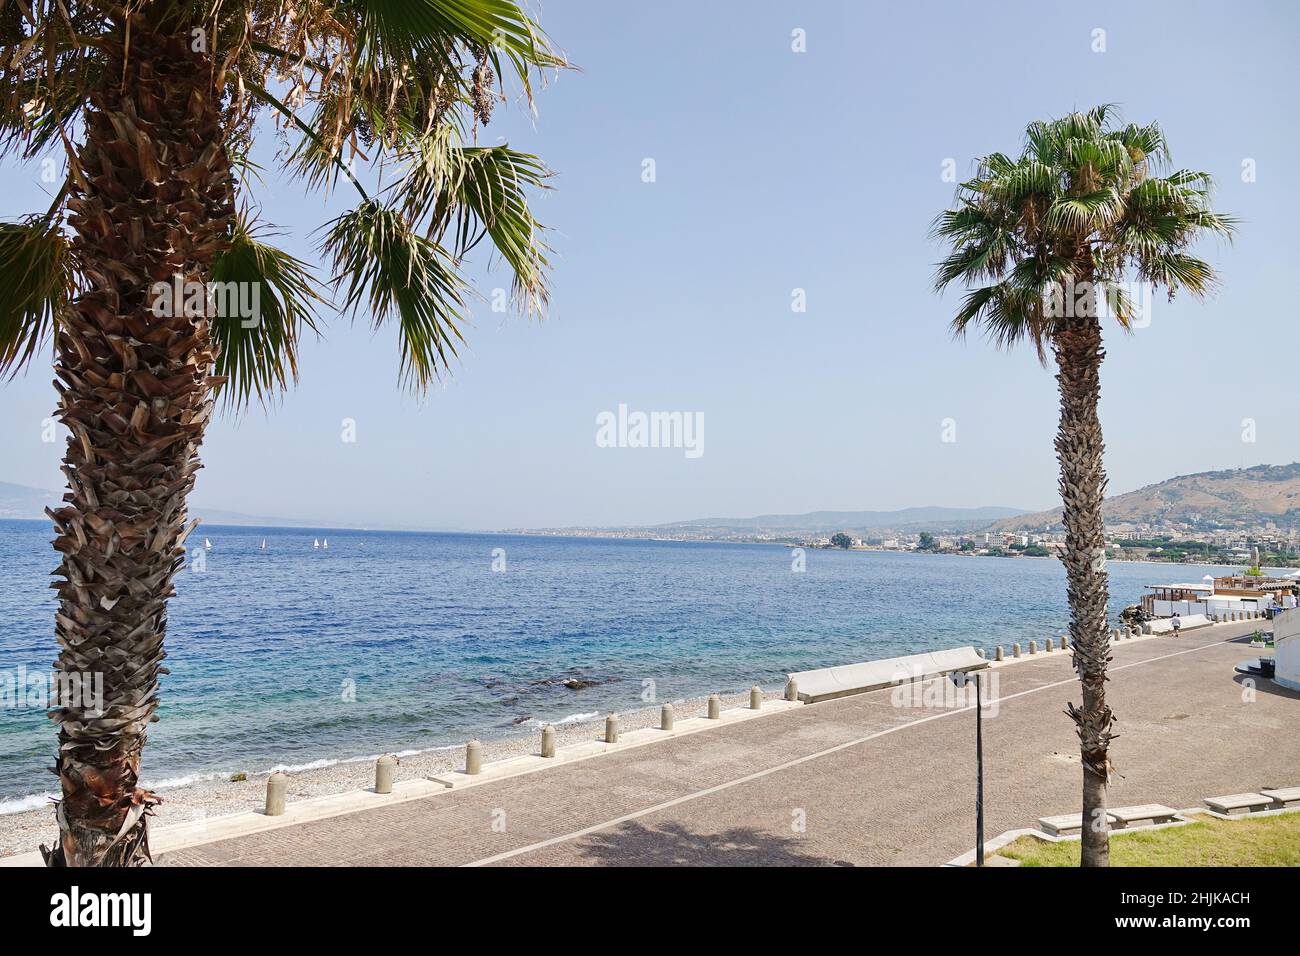 Reggio di Calabria, Falcomata promenade with a view of the Strait of Messina Stock Photo